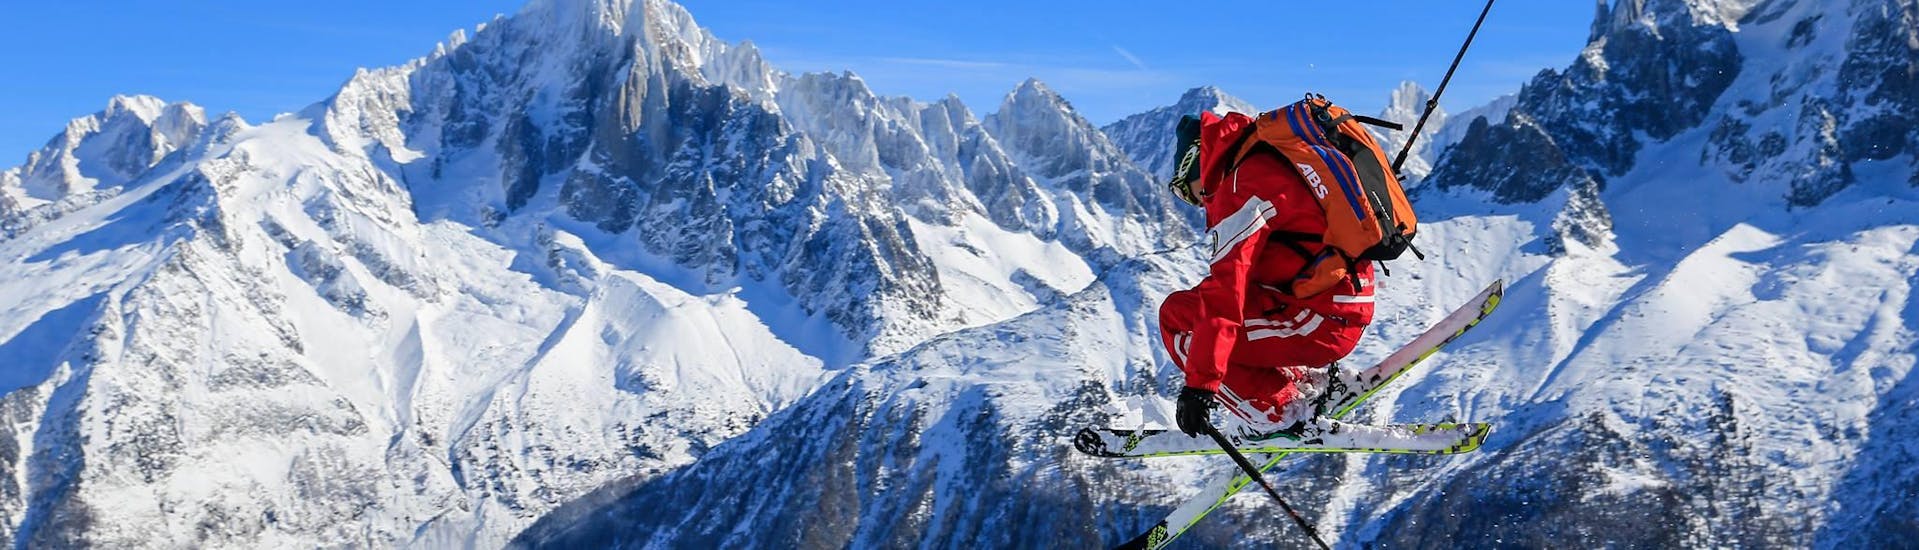 Frente a una montaña de fondo, un esquiador salta mientras hace Freeride durante su Tour de Freeride "Mont Blanc Ski Discovery" con la escuela de esquí ESF Chamonix.